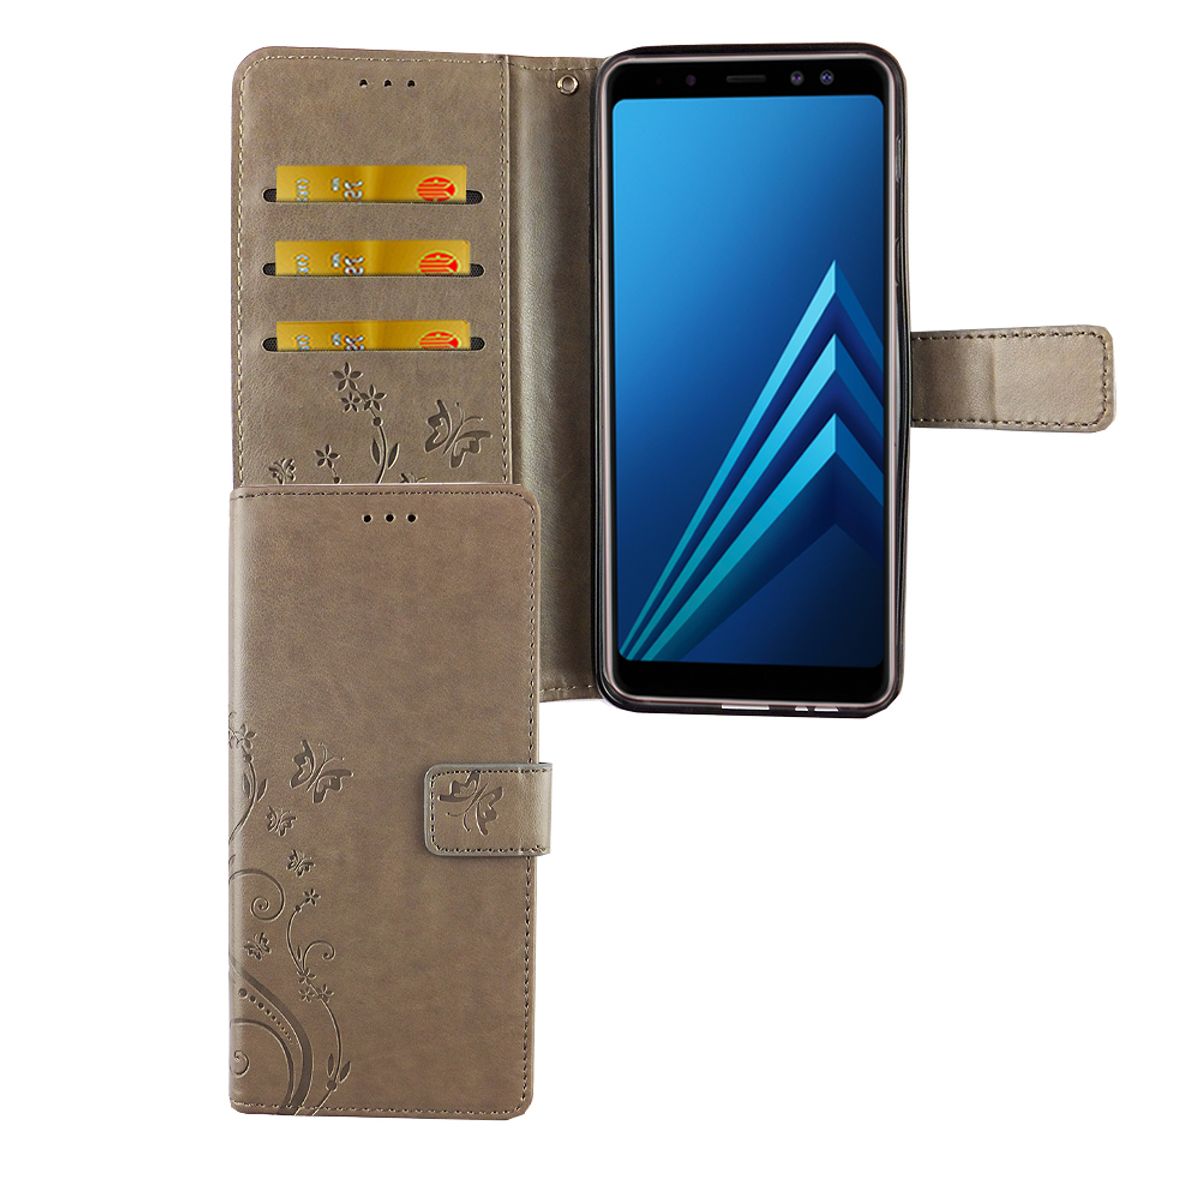 König Design Handyhülle kompatibel mit Samsung Galaxy A6 Plus (2018) Schutztasche Wallet Cover 360 Case Grau